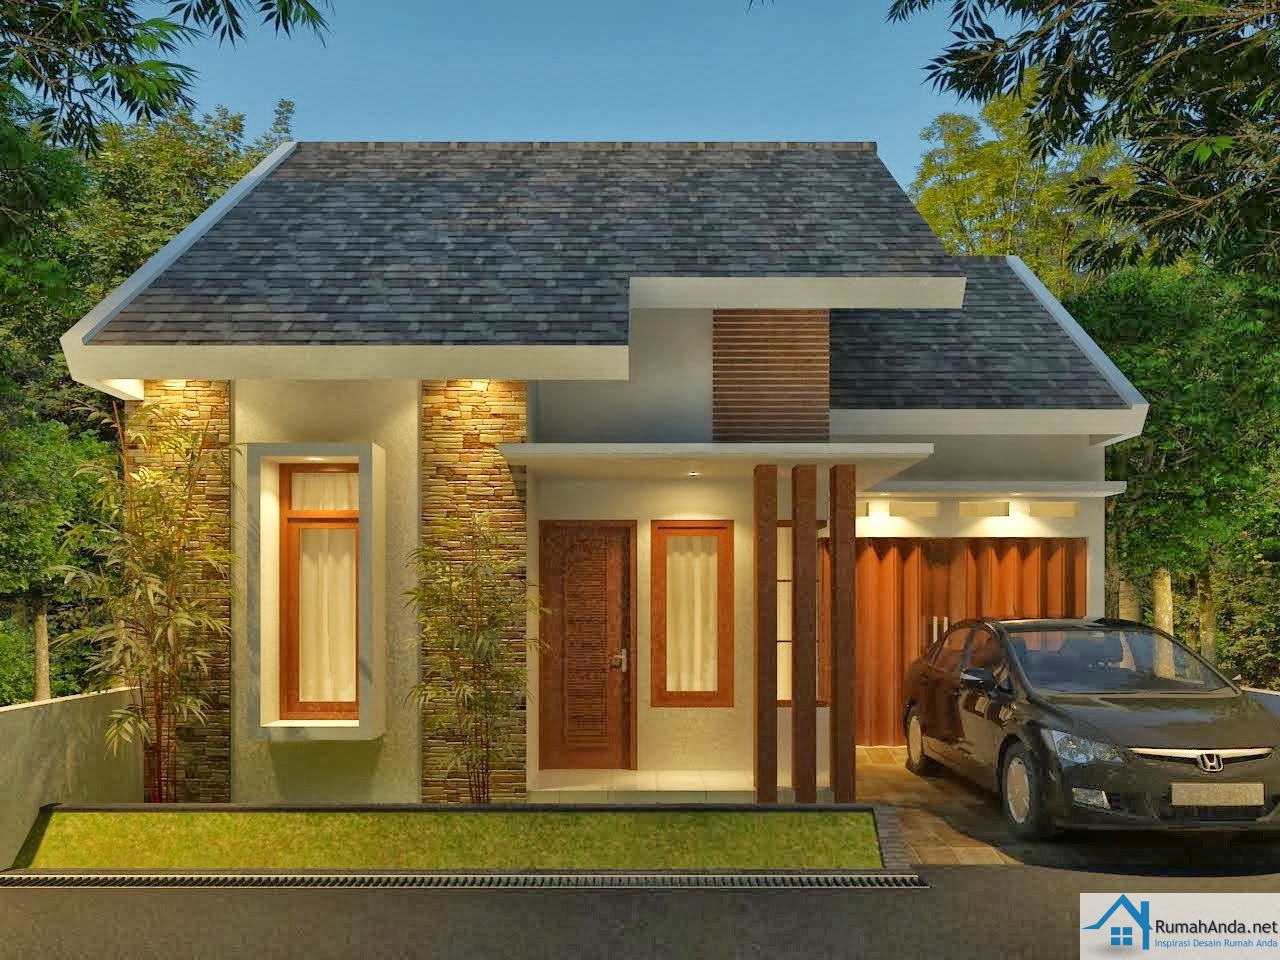  Desain  Rumah  Minimalis  Modern  1  dan 2 Lantai  2019 Contoh 